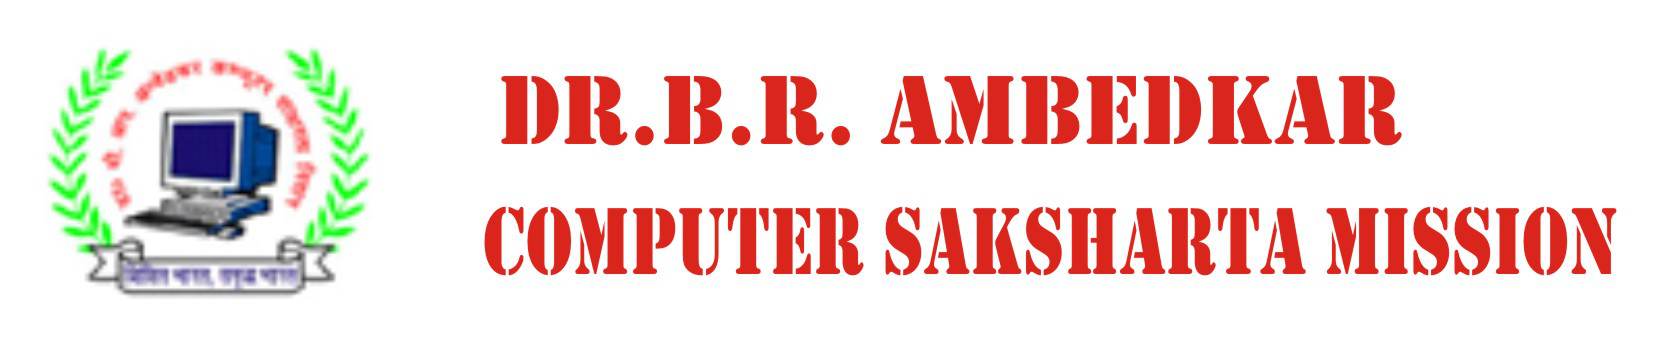 Dr. B. R. AMBEDKAR COMPUTER SAKSHARTA MISSION